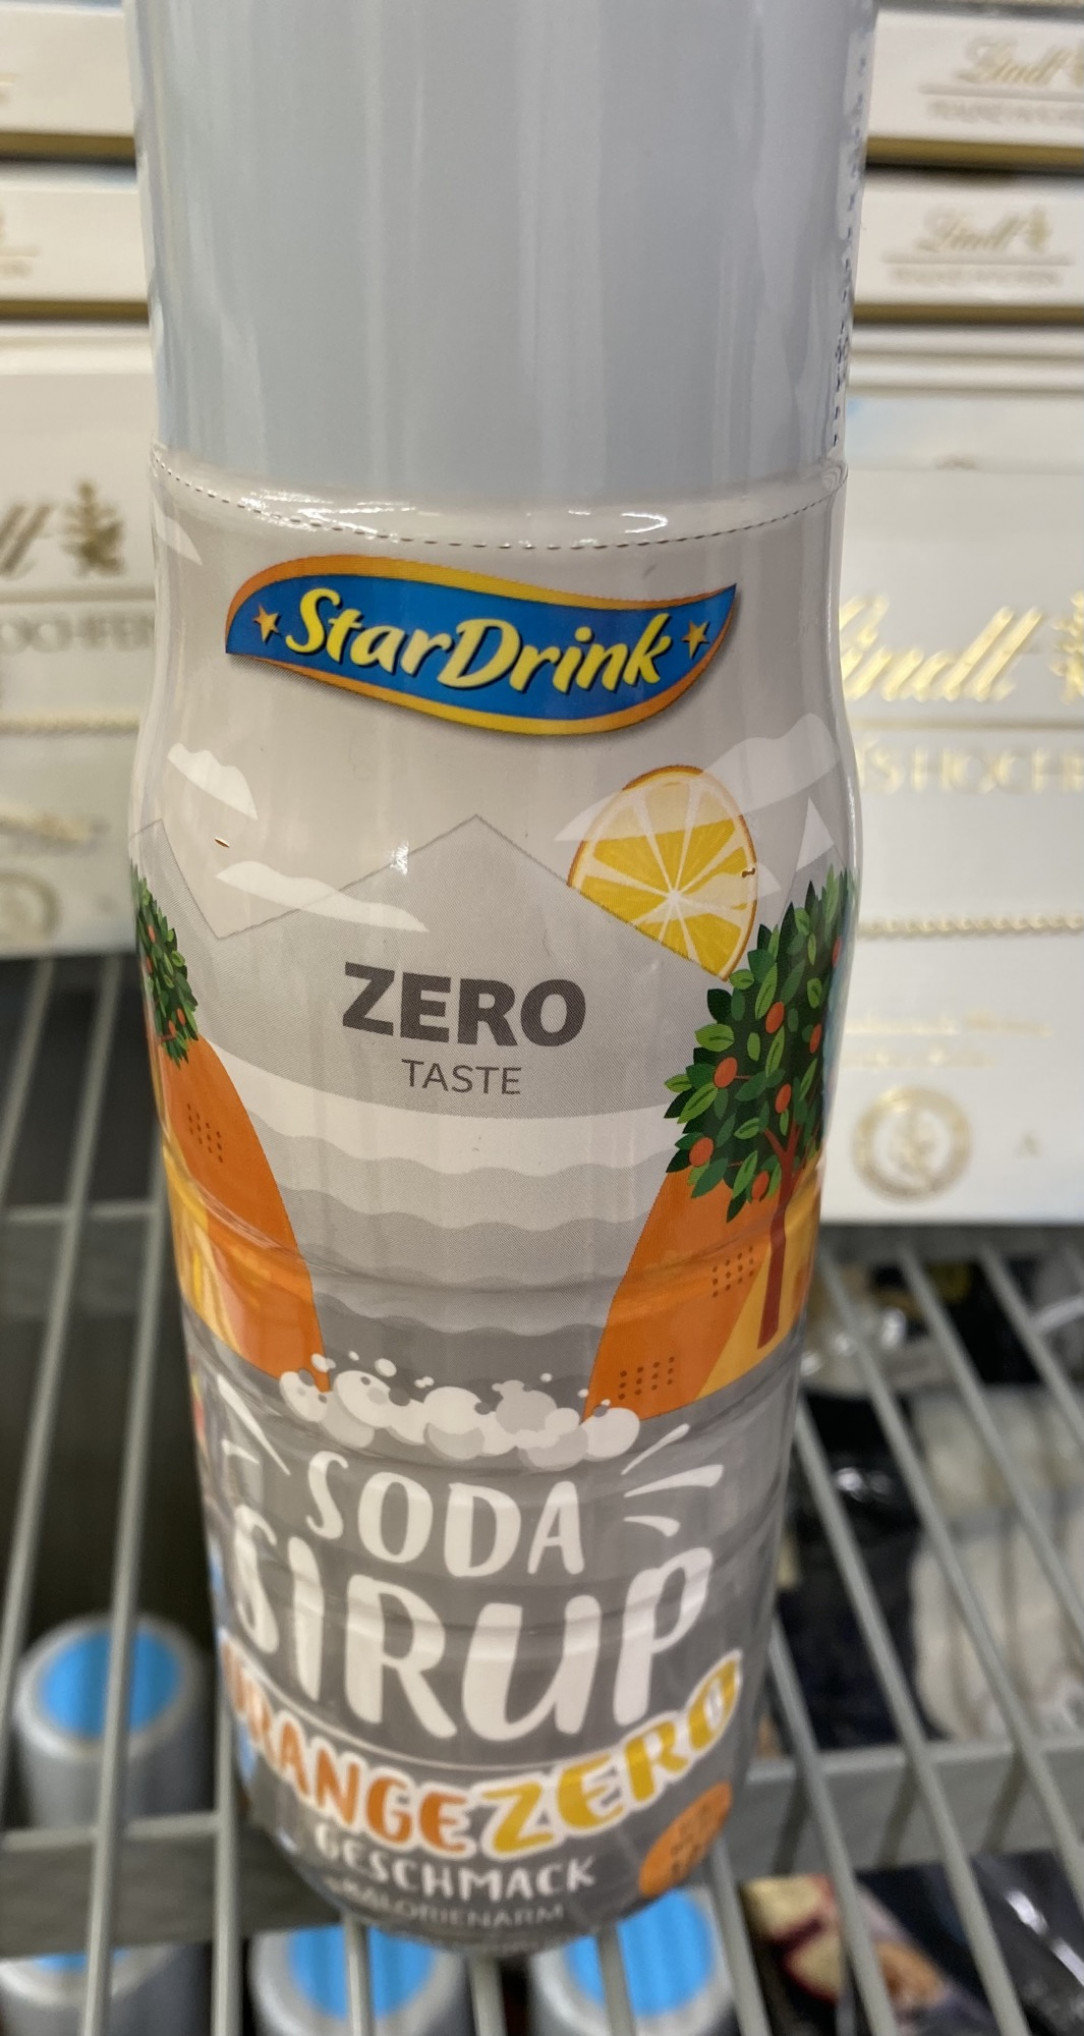 Zero taste